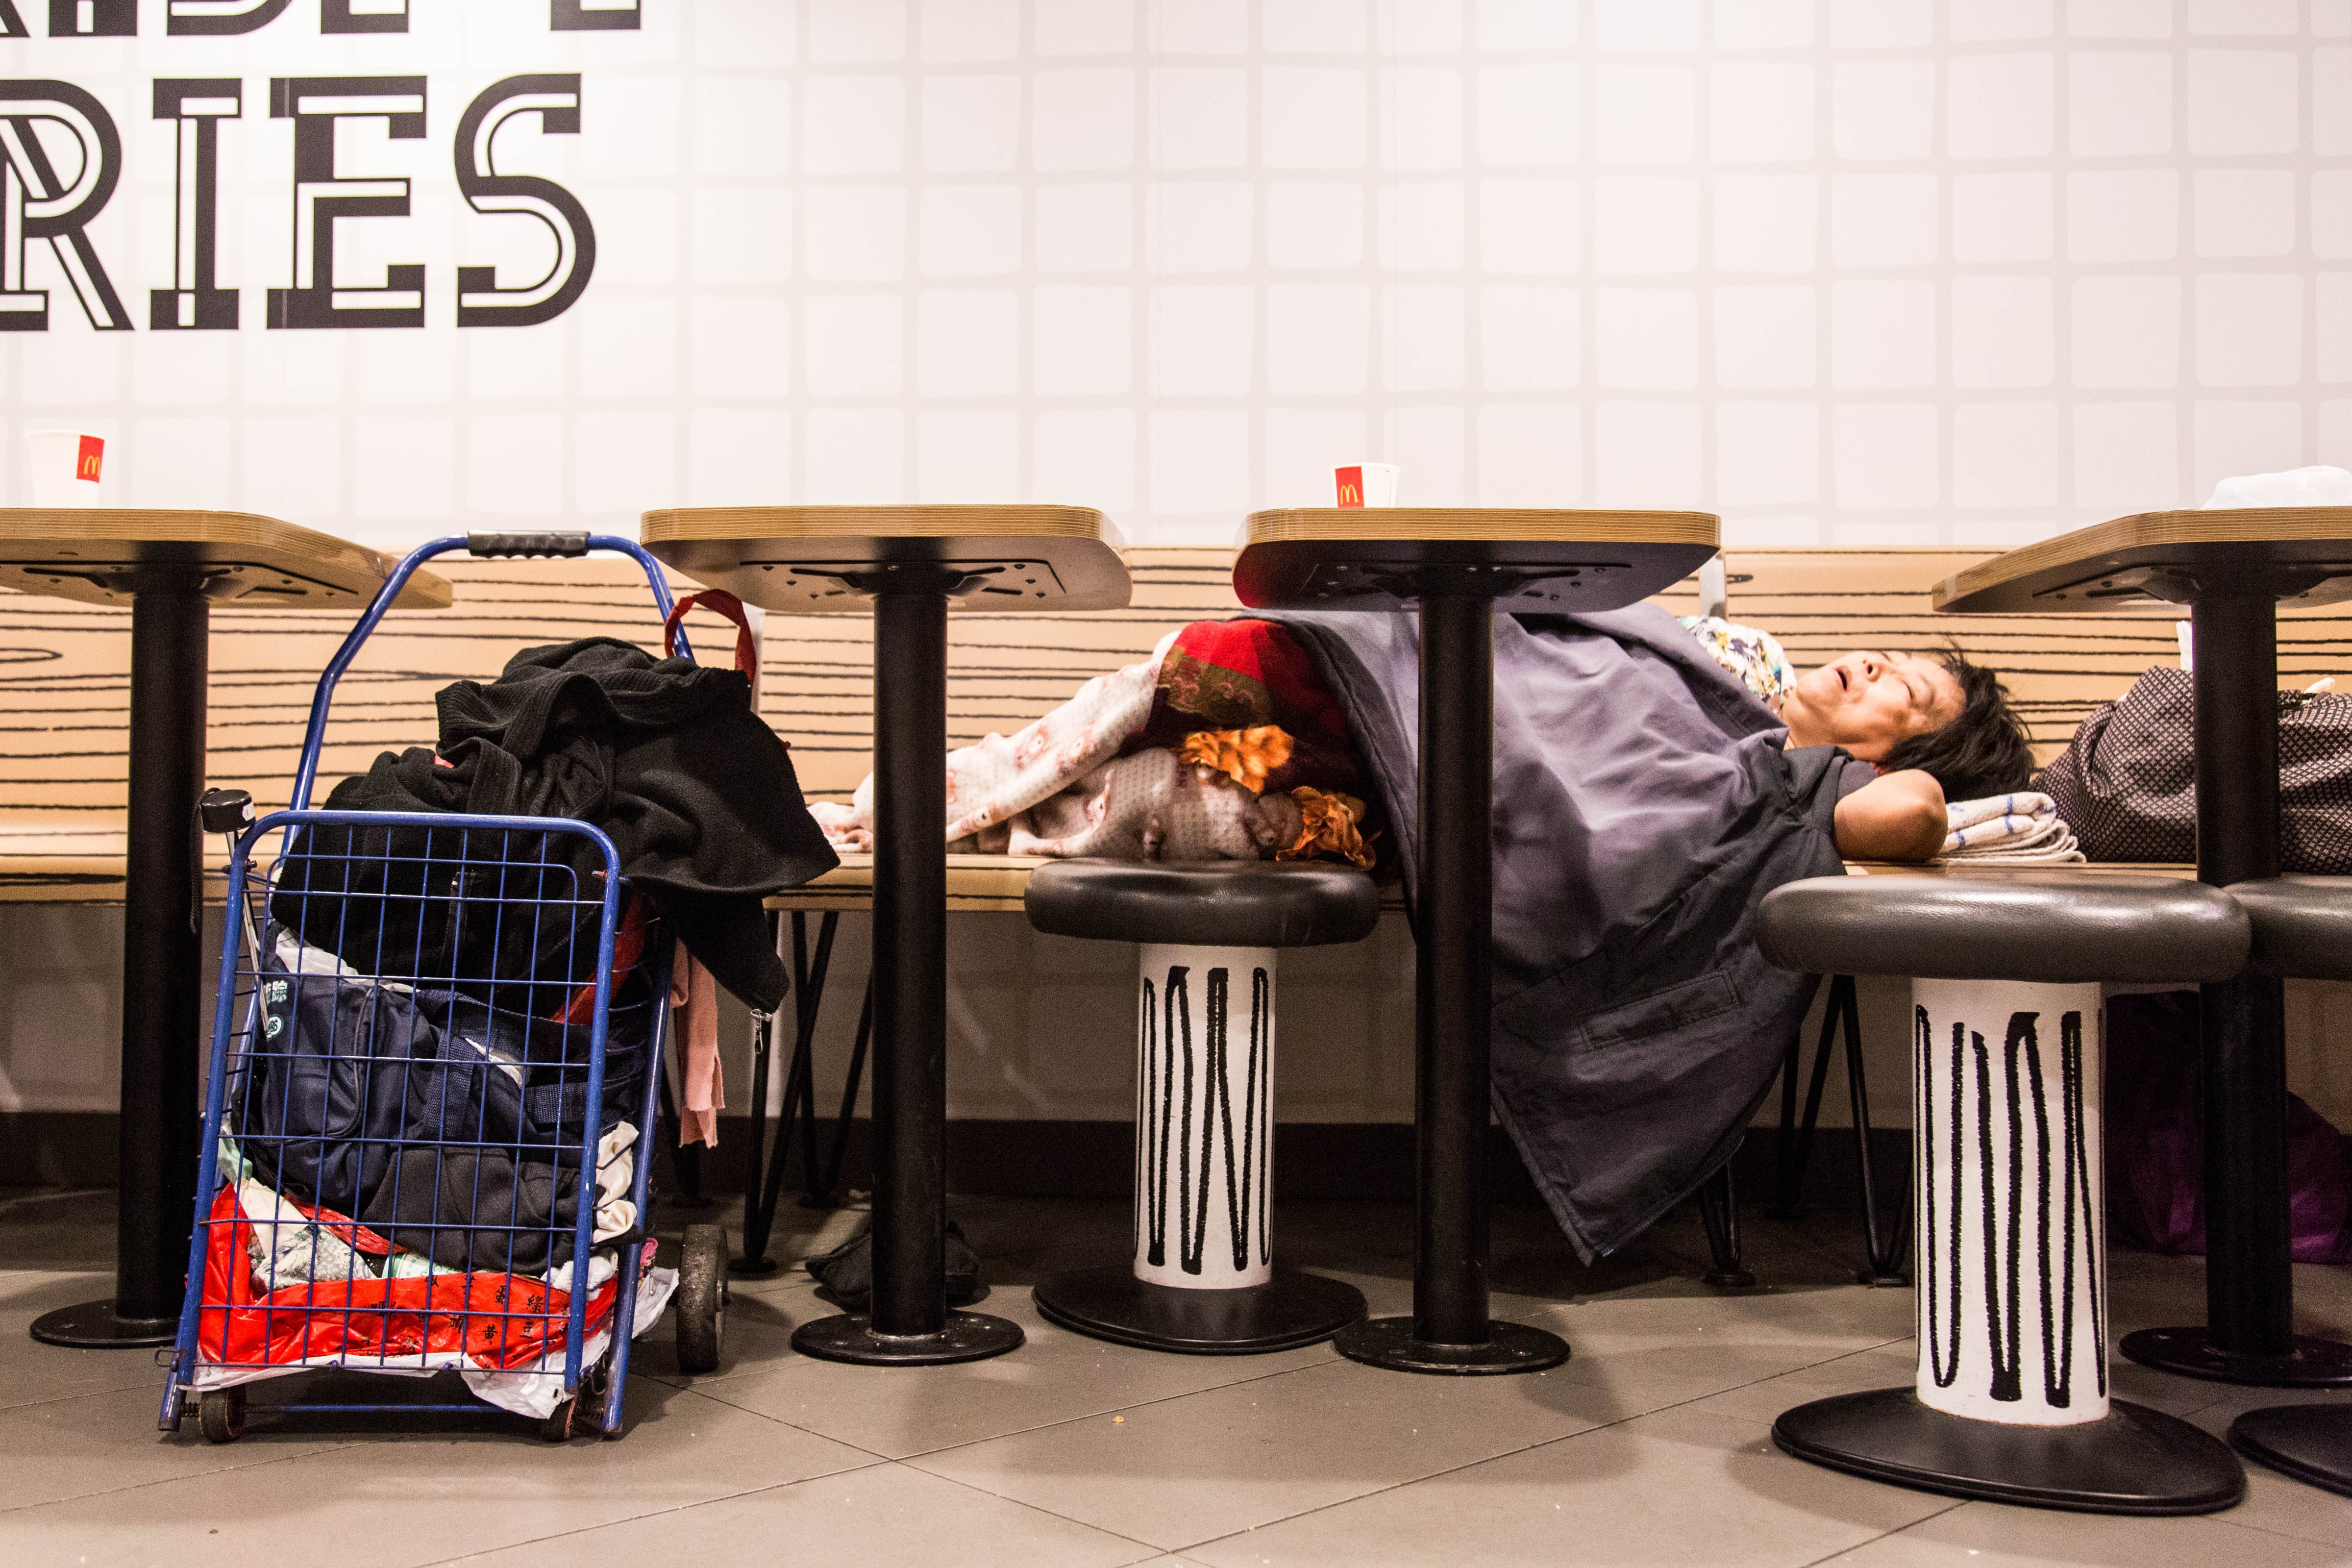 A 'McRefugee' sleeps in a restaurant in Hong Kong. (Aria Chen)